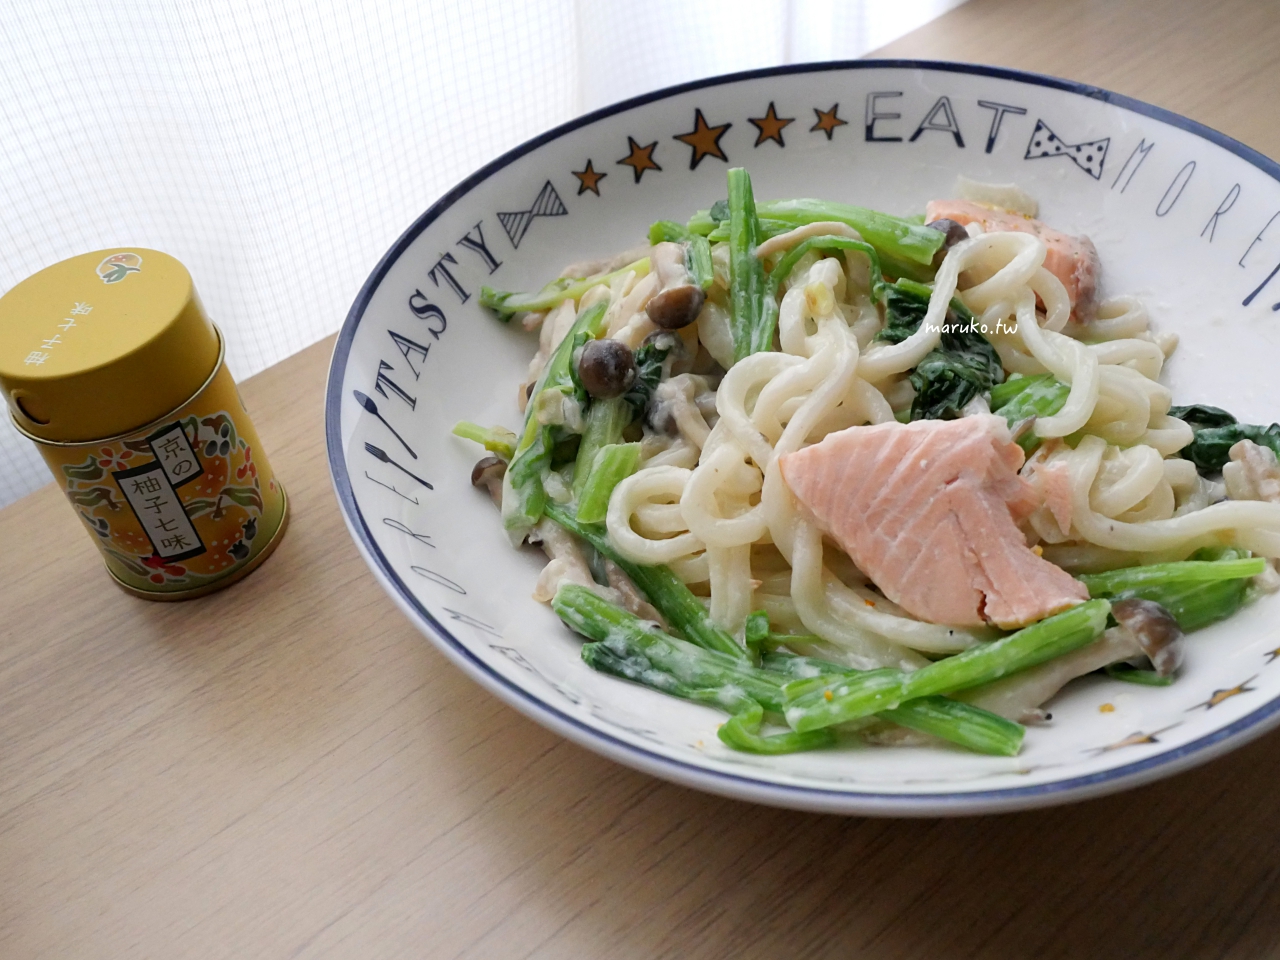 【食譜】和風白醬鮭魚拌烏龍麵 三樣調味料就能搞定簡單日本風味白醬！ @Maruko與美食有個約會